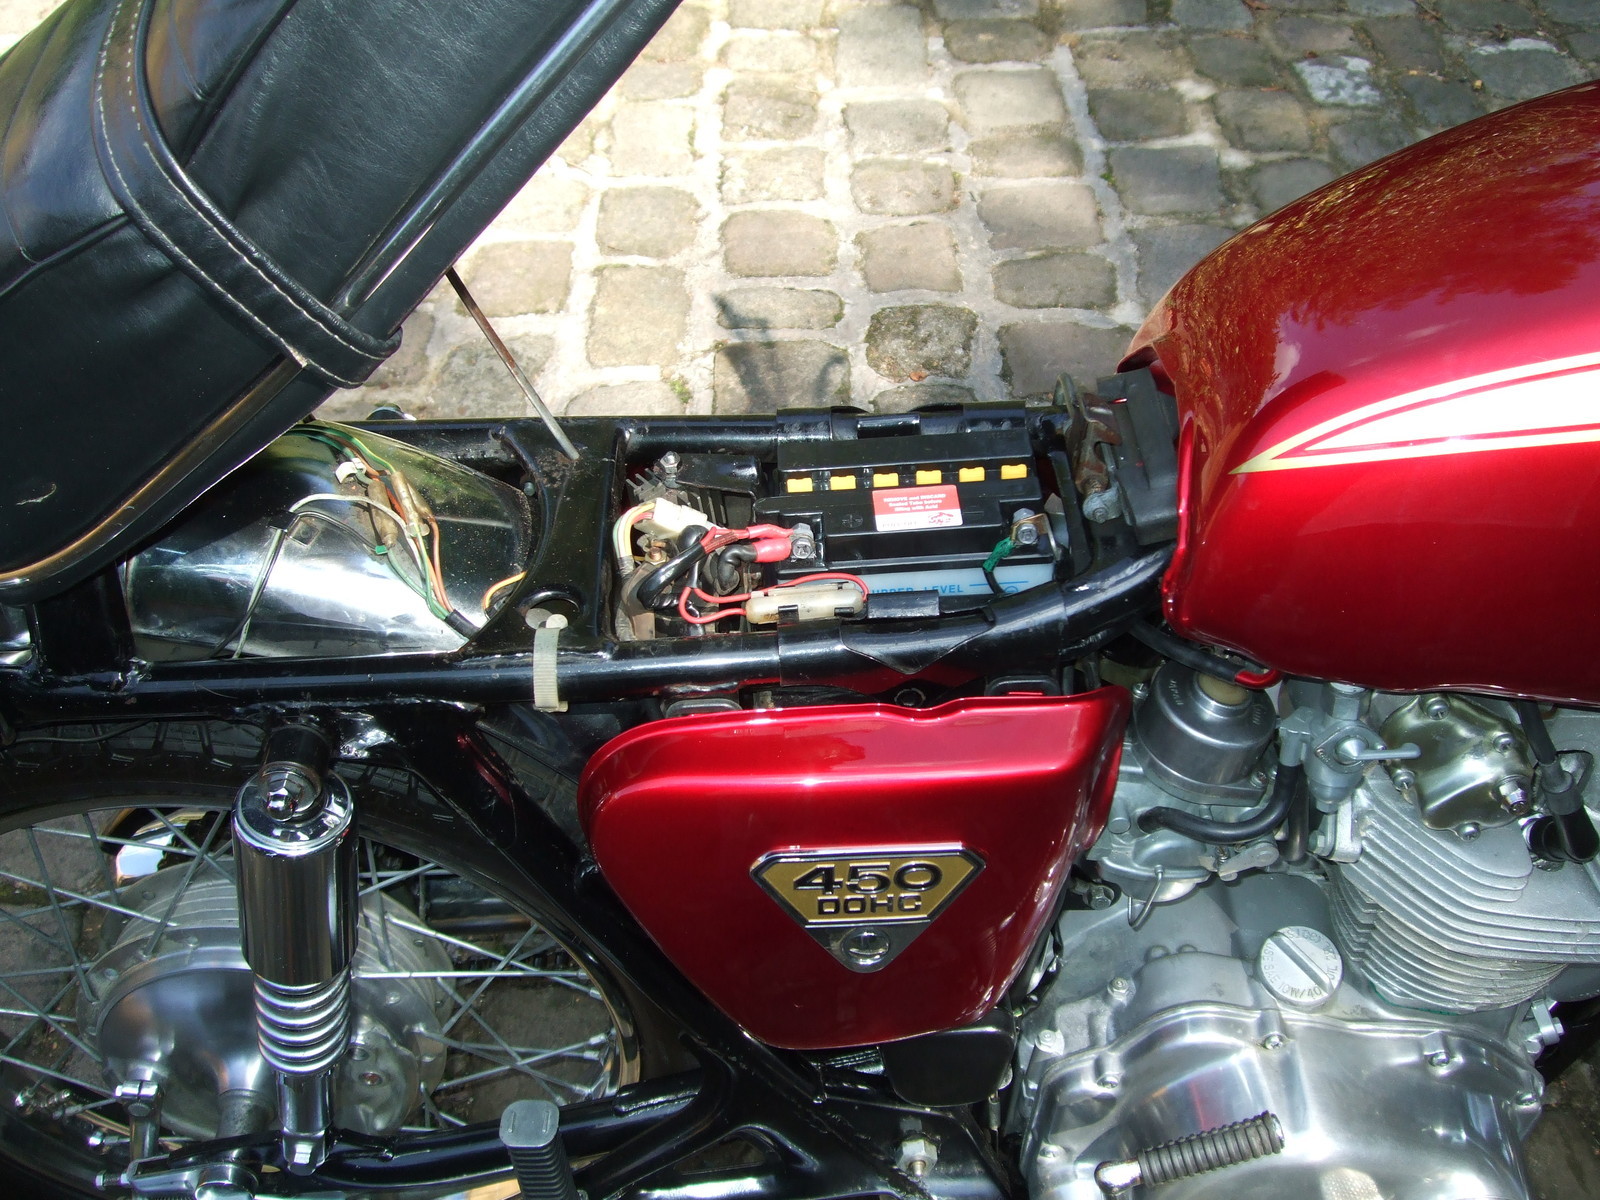 Honda CB450 K3 - 1970